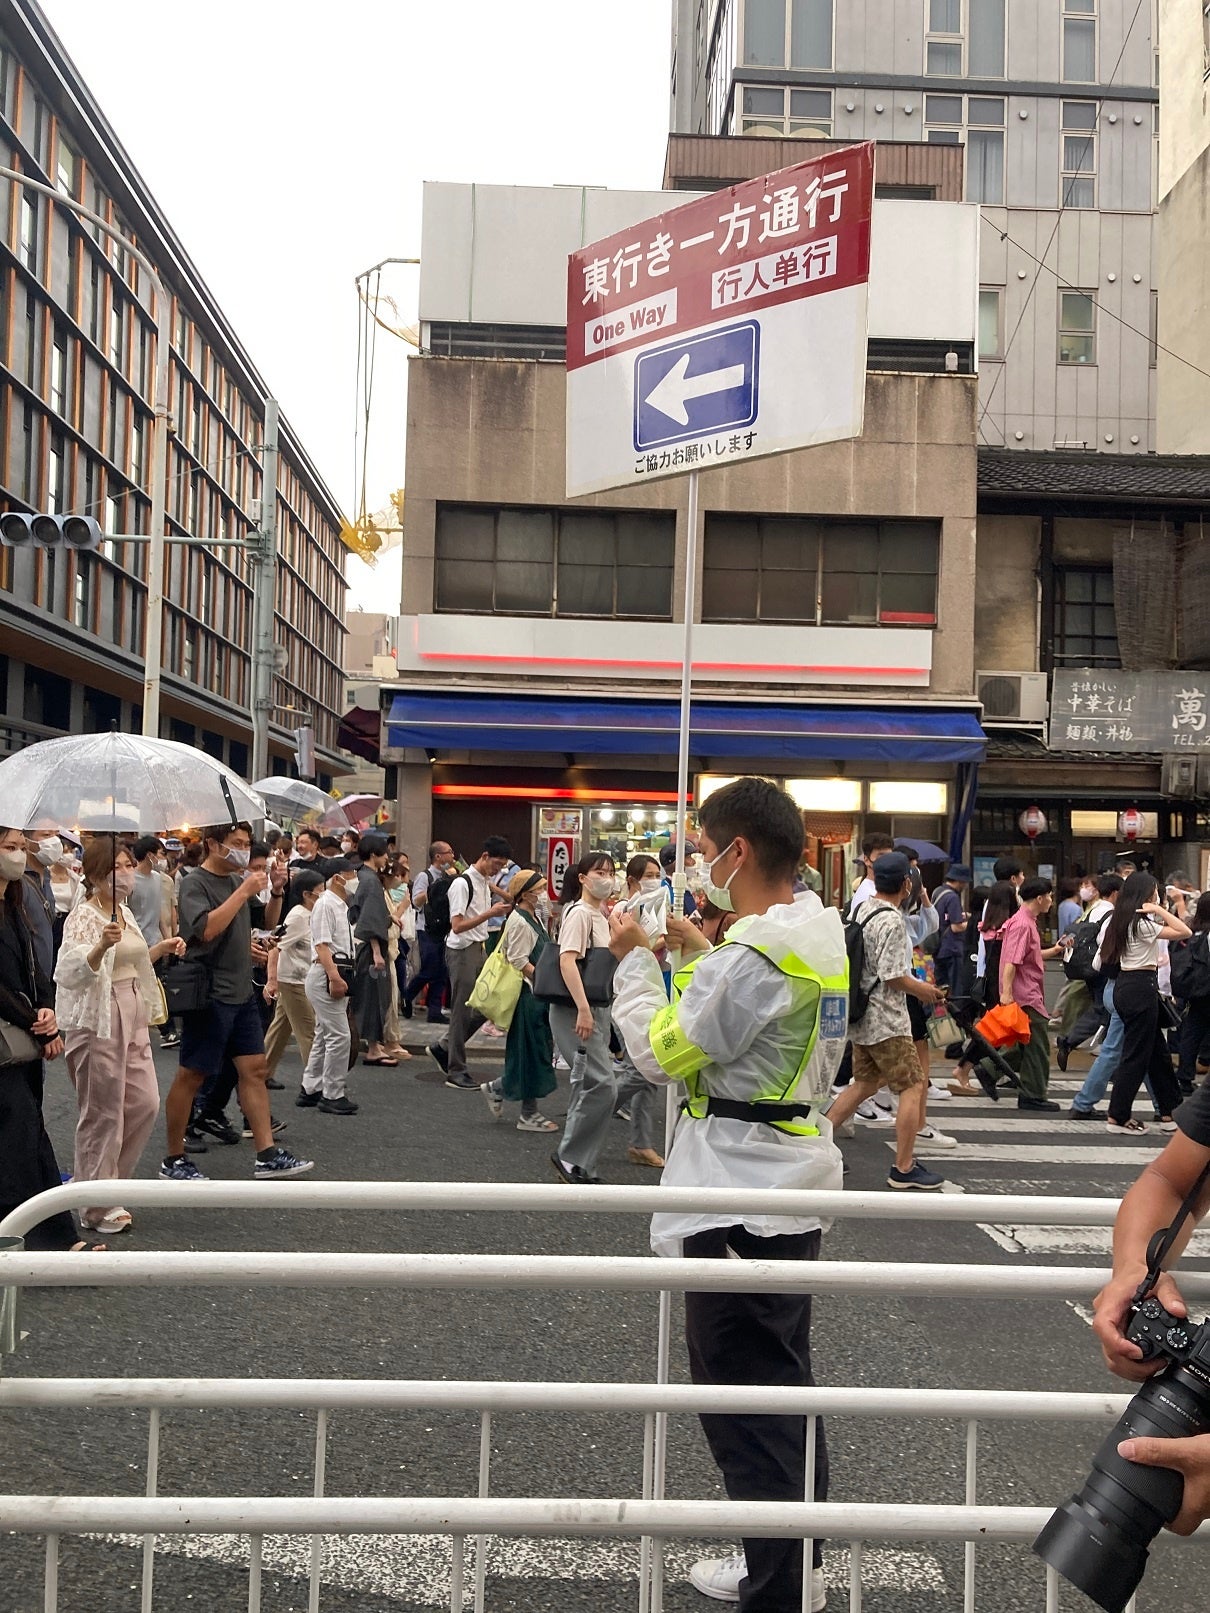 京都府警察と連携した祇園祭の観覧環境向上のための取組